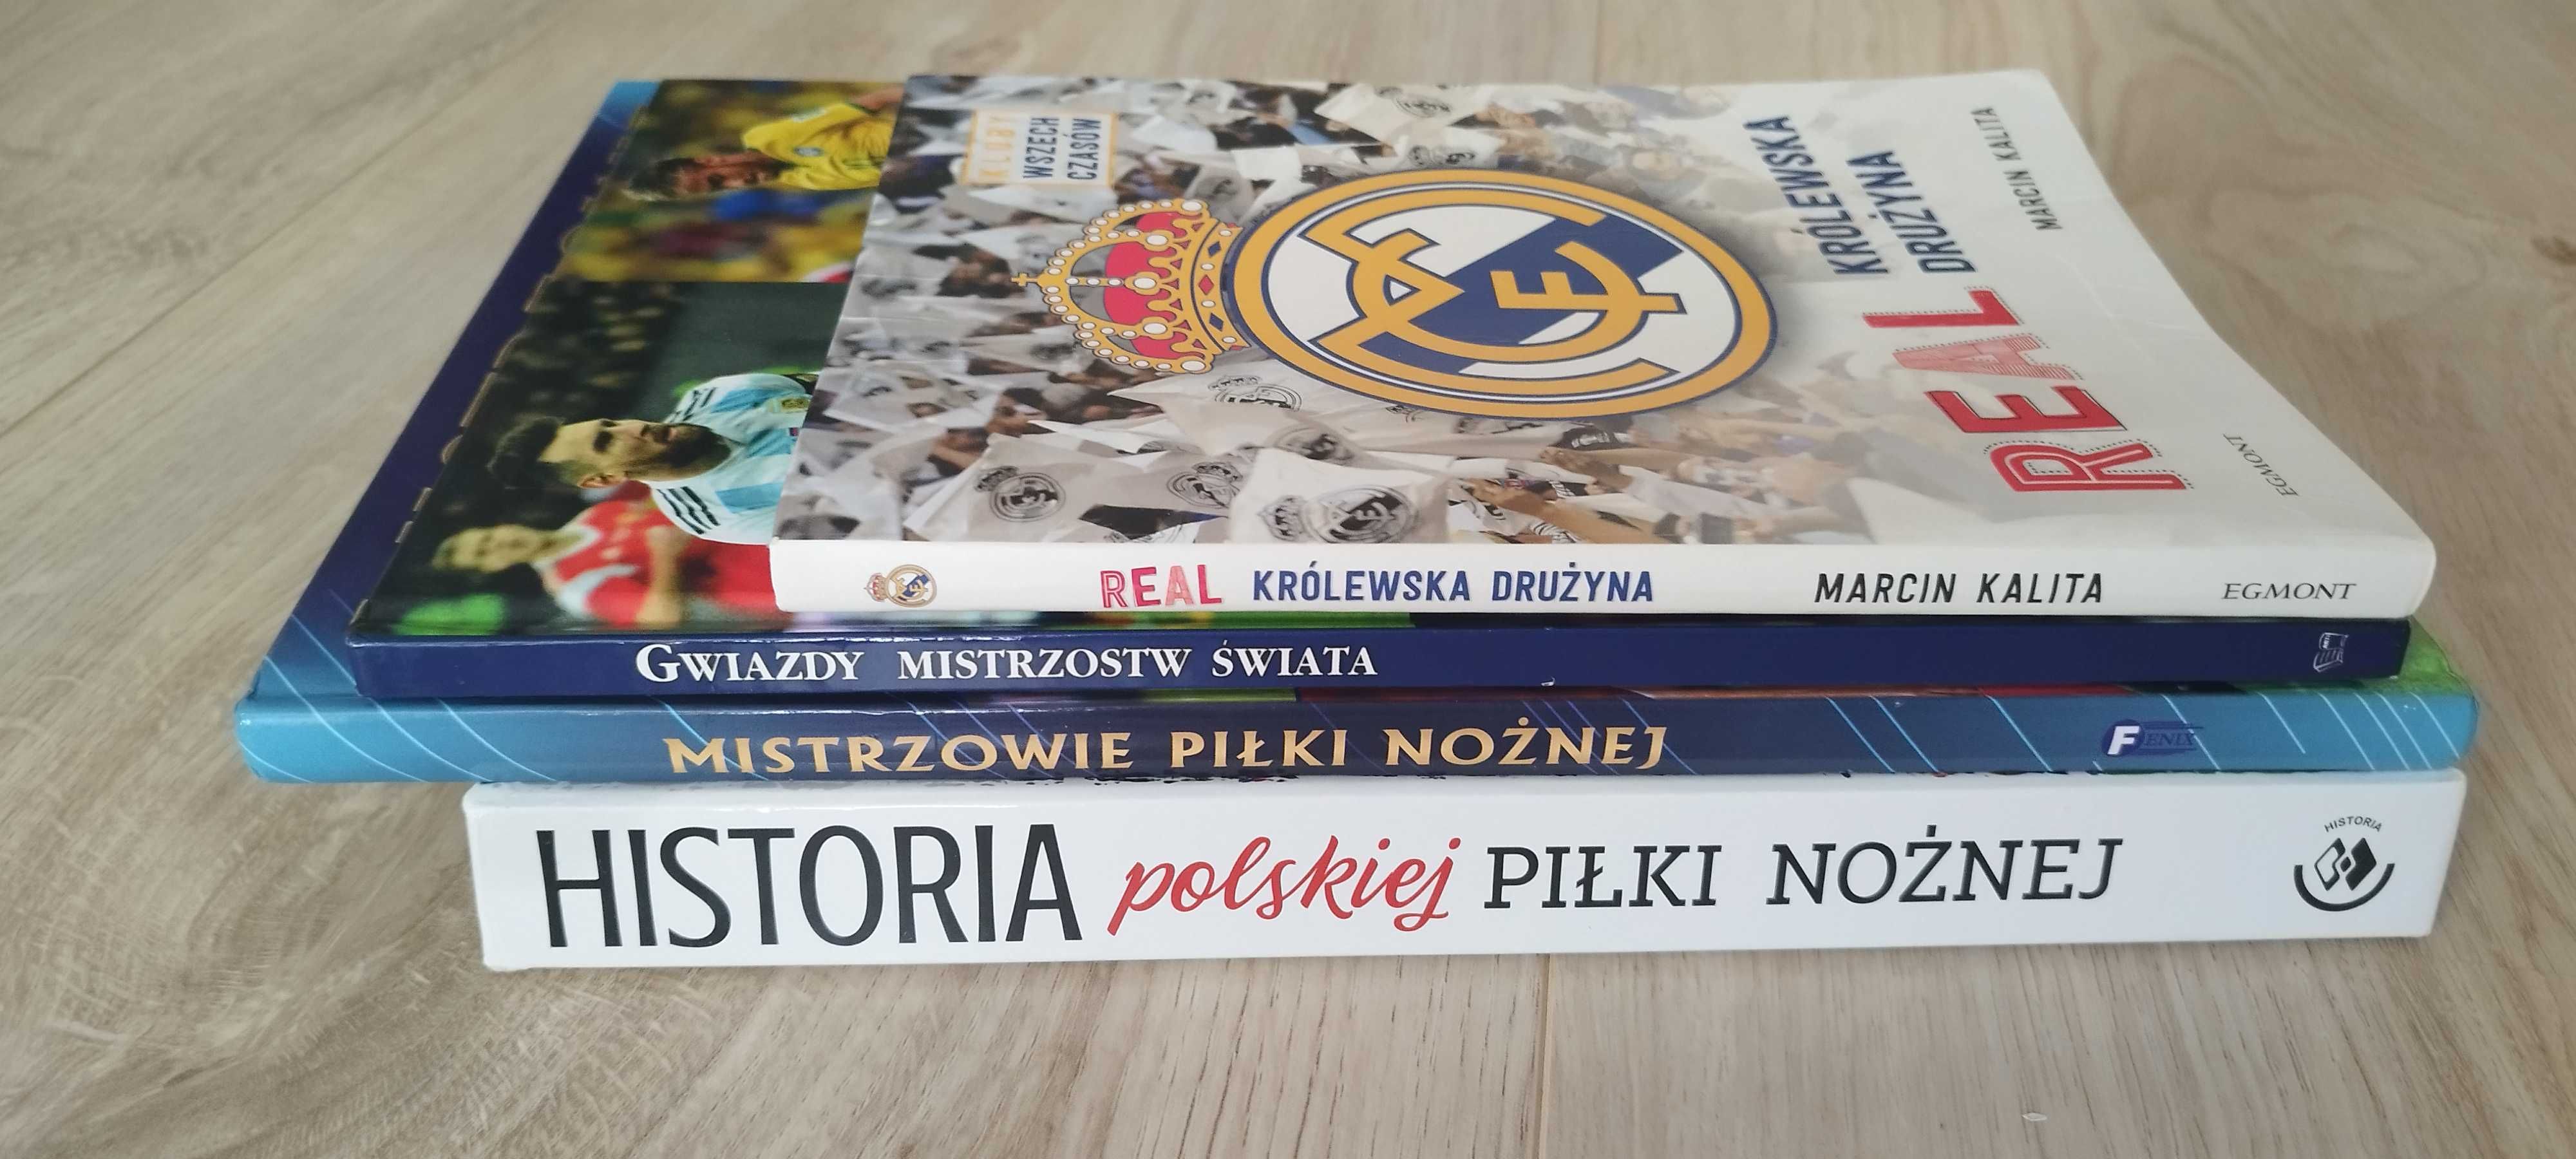 Historia polskiej piłki nożnej, Real królewska drużyna i inne..